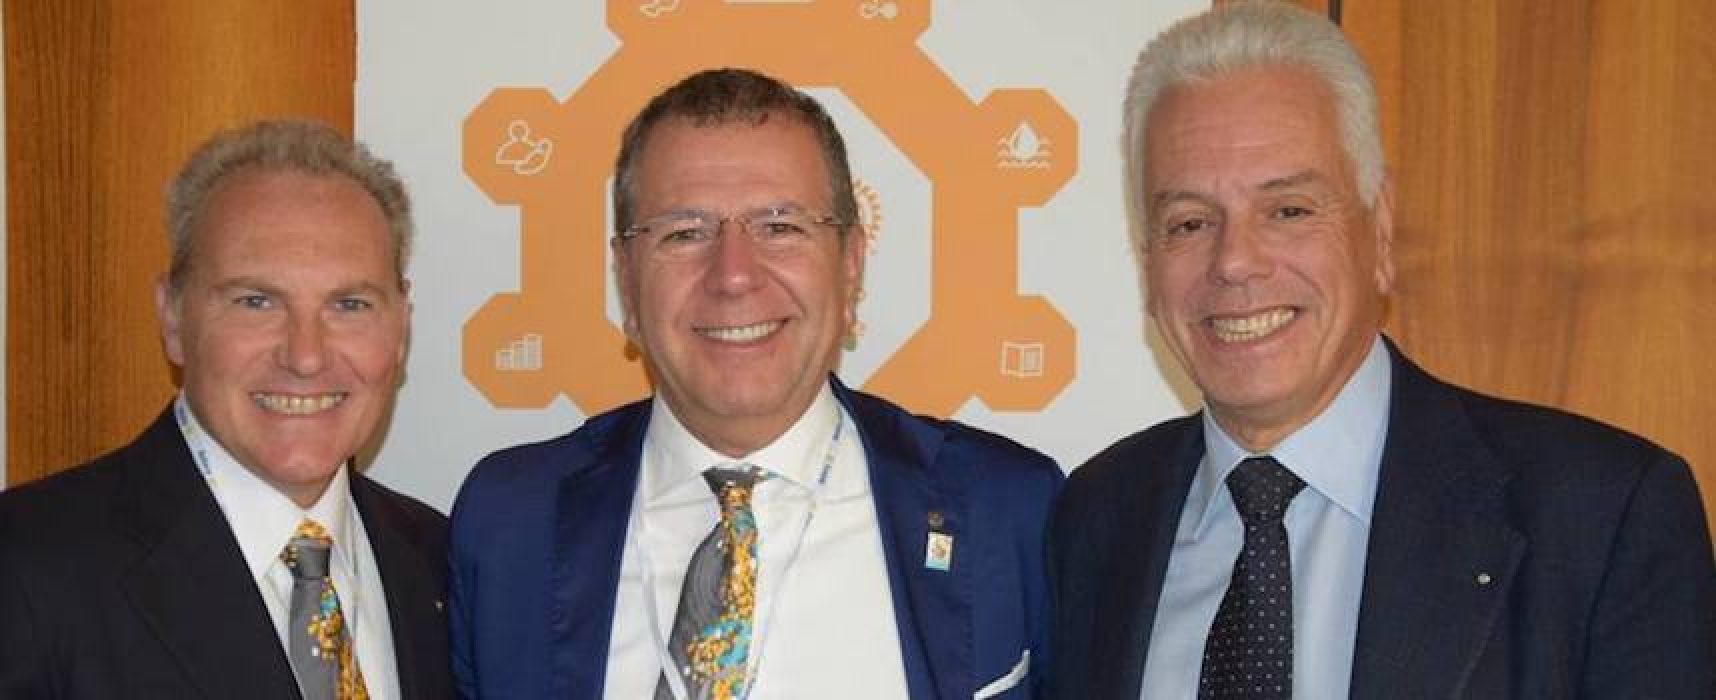 Giro di boa Rotary Club, intervista a Sinigaglia: “Impegno per ambiente e scambio culturale per i giovani”